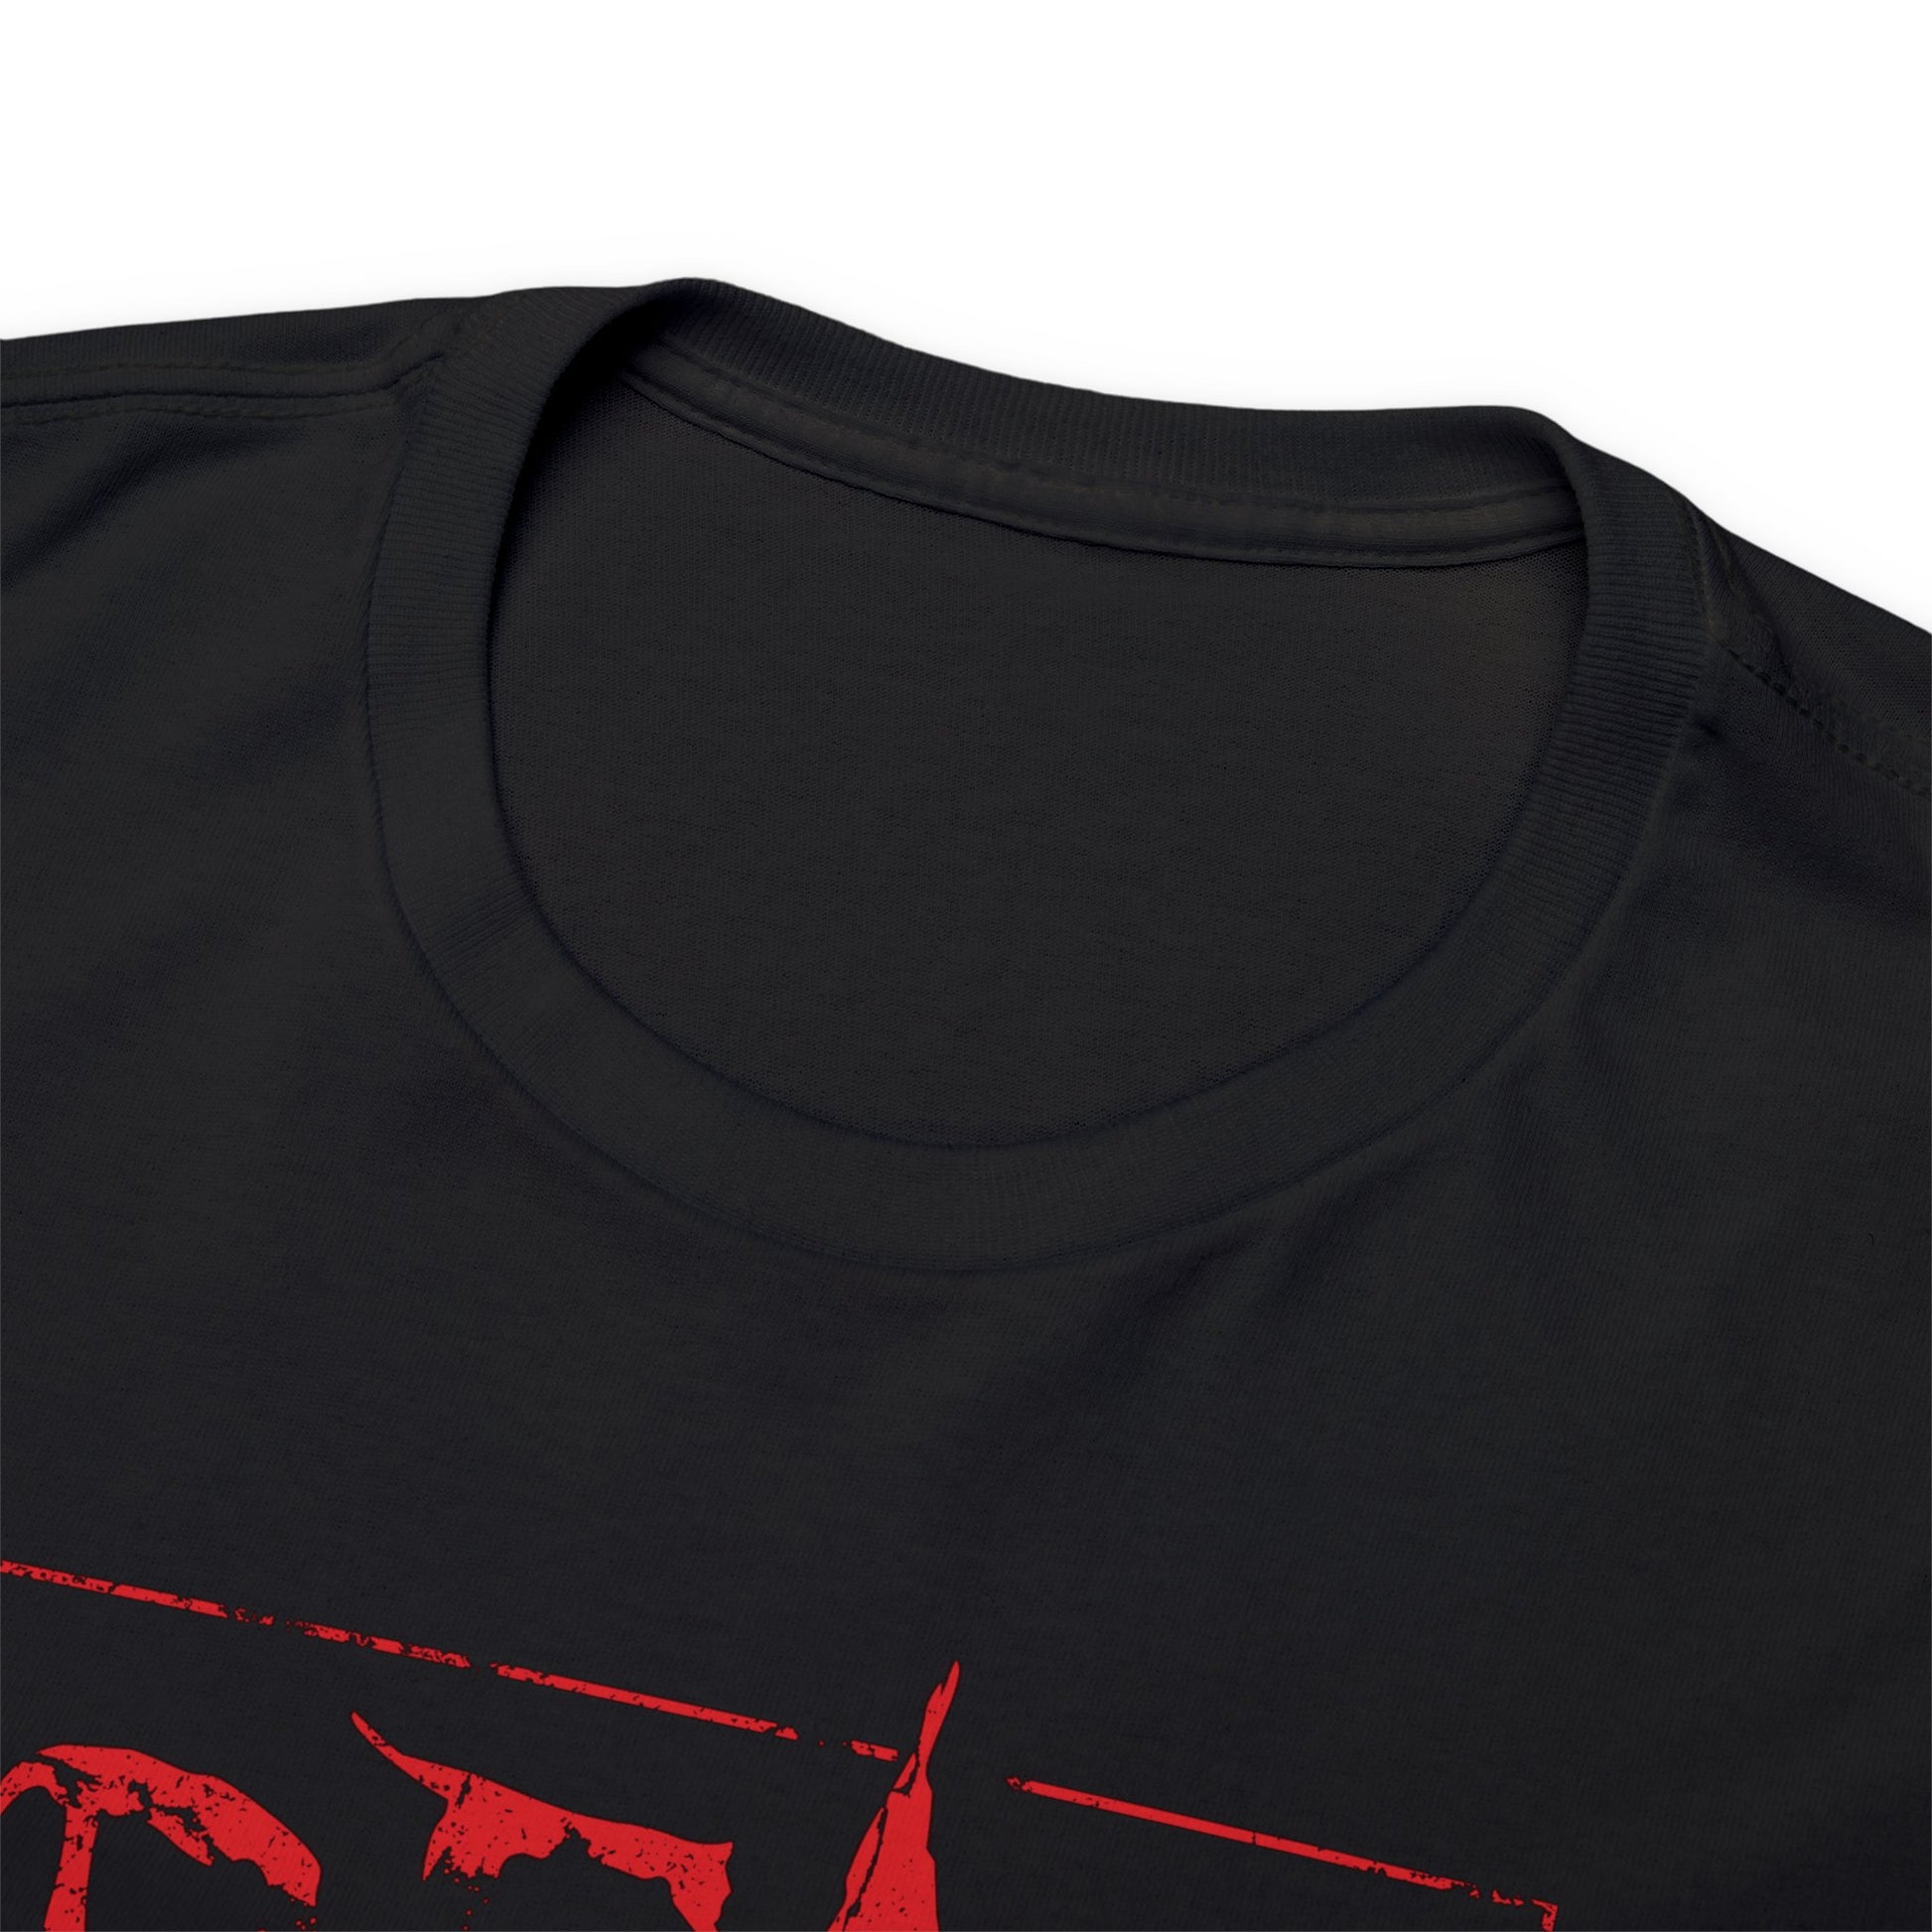 Unisex T-shirt Dead Inside in Red - Frogos Design